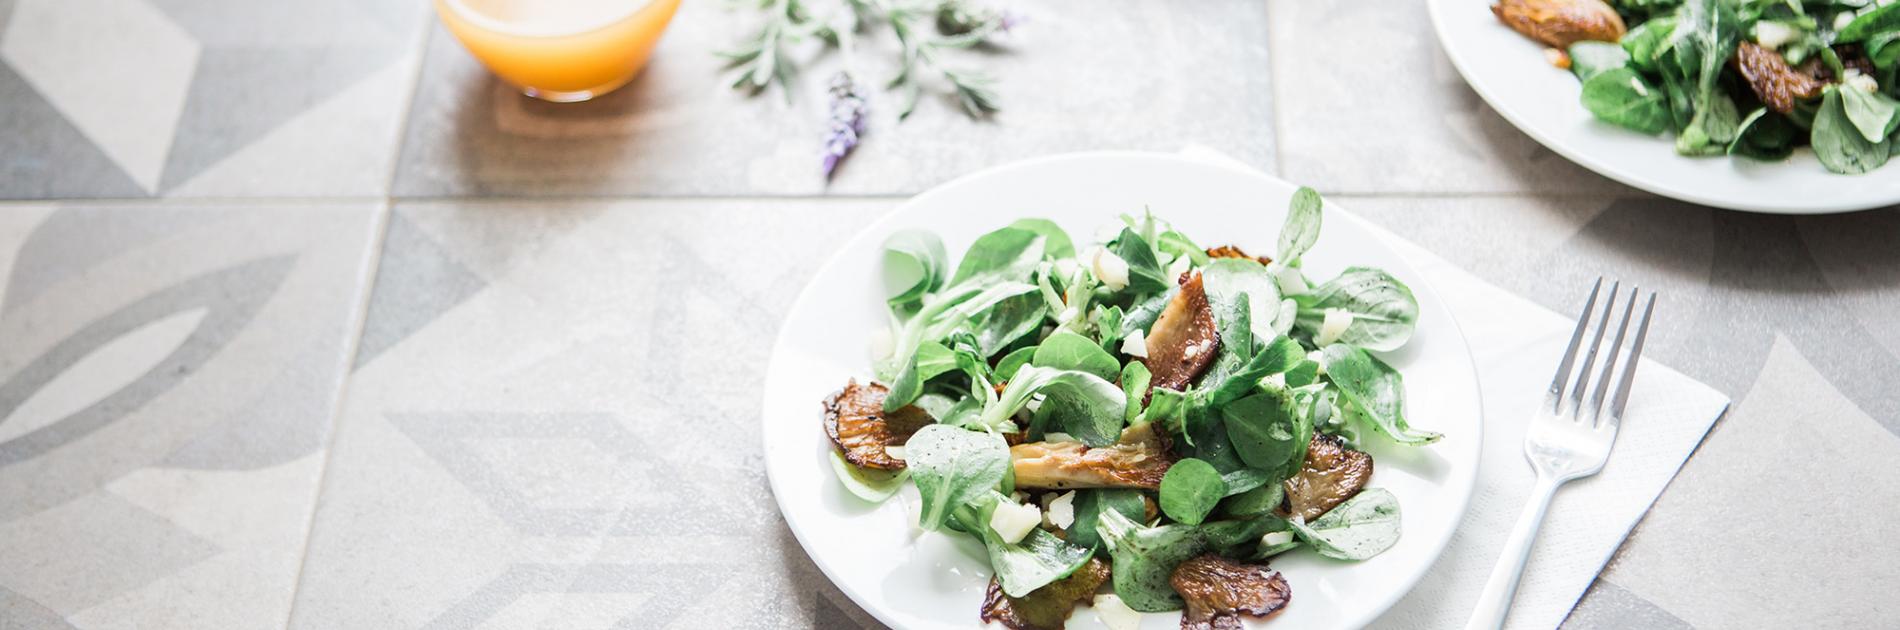 Salade met gerookte kip en champignons